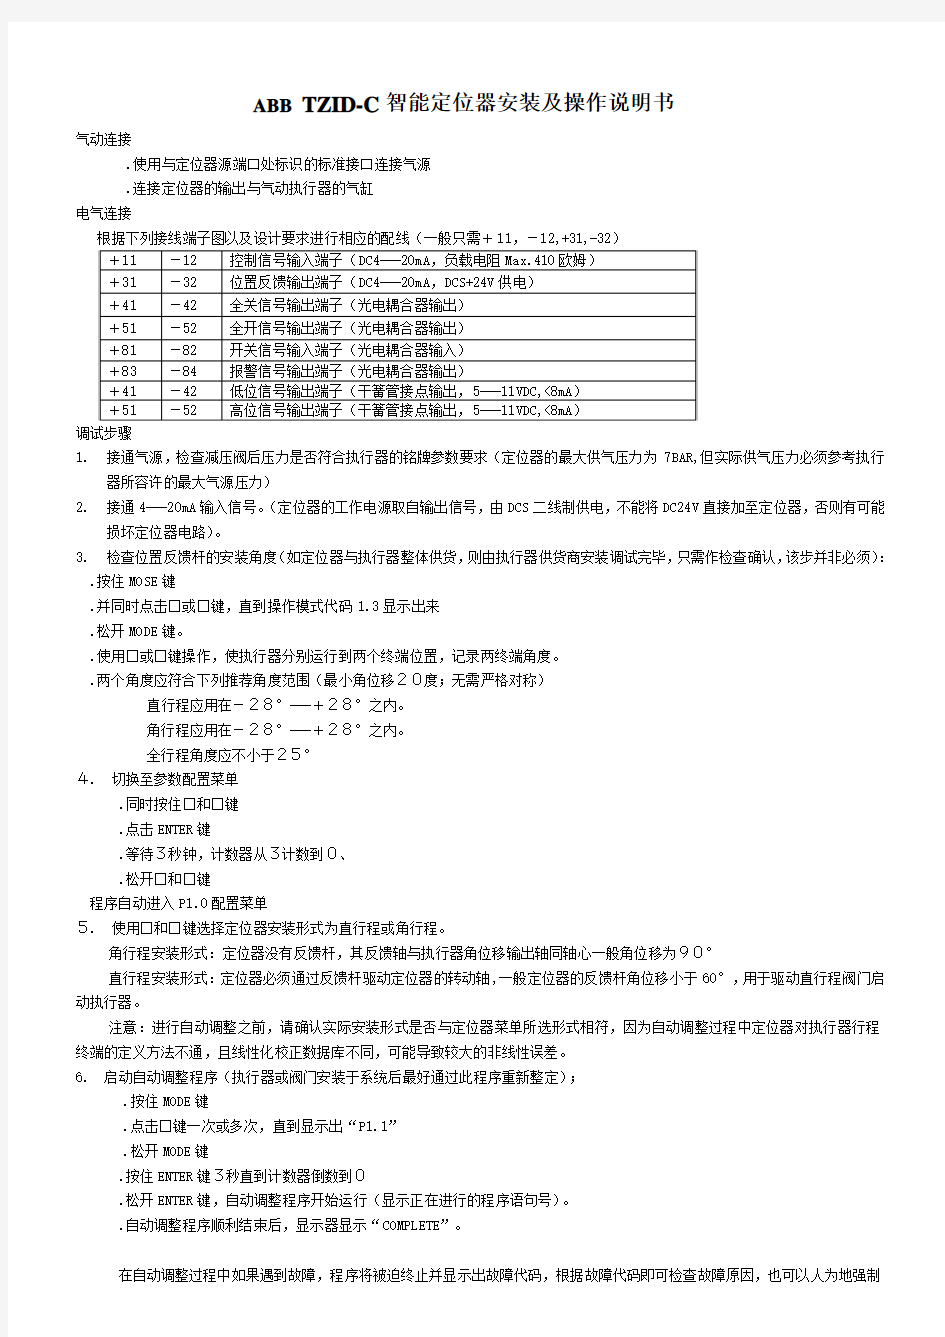 ABB智能定位器TZID-C说明书(中文版)